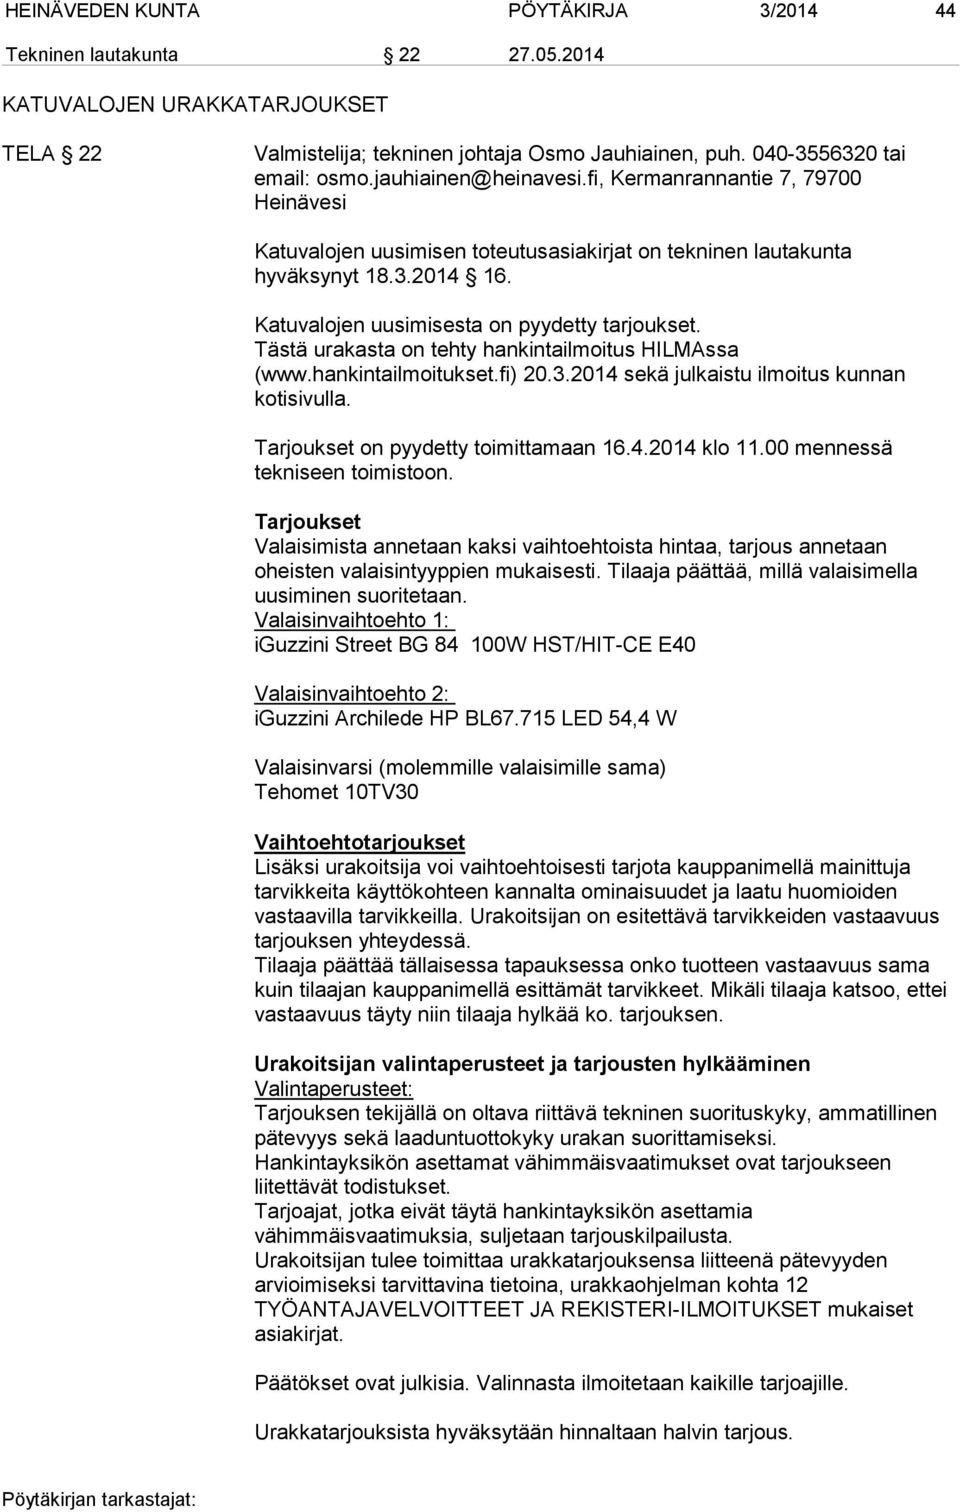 Tästä urakasta on tehty hankintailmoitus HILMAssa (www.hankintailmoitukset.fi) 20.3.2014 sekä julkaistu ilmoitus kunnan kotisivulla. Tarjoukset on pyydetty toimittamaan 16.4.2014 klo 11.